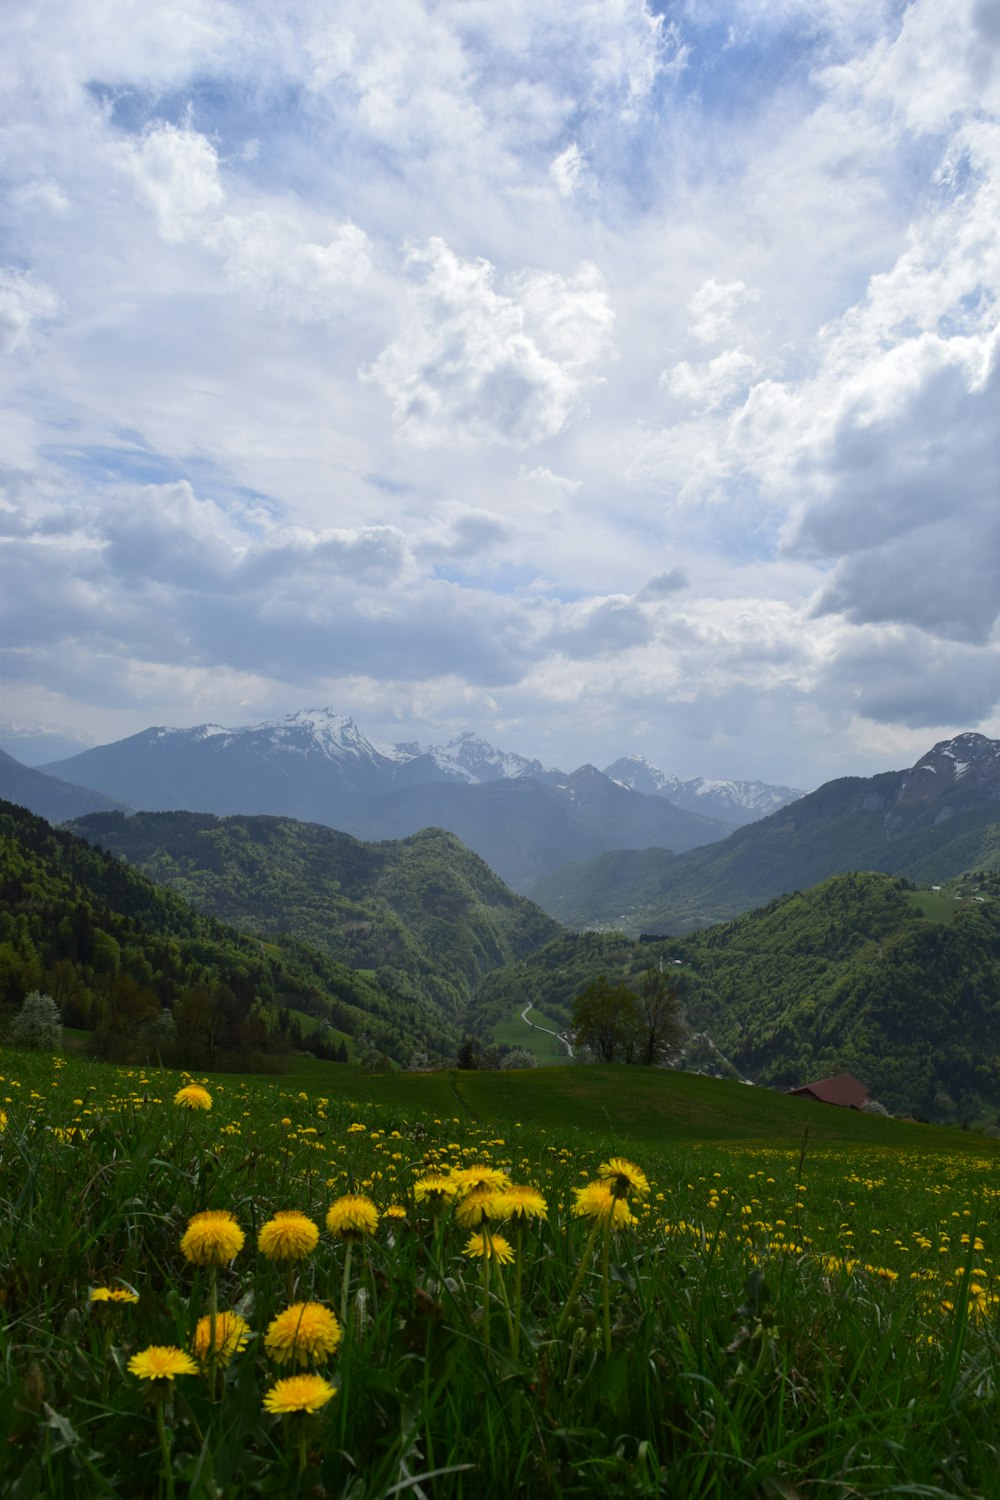 Champ de fleurs jaunes près des montagnes vertes sous les nuages blancs pendant la journée